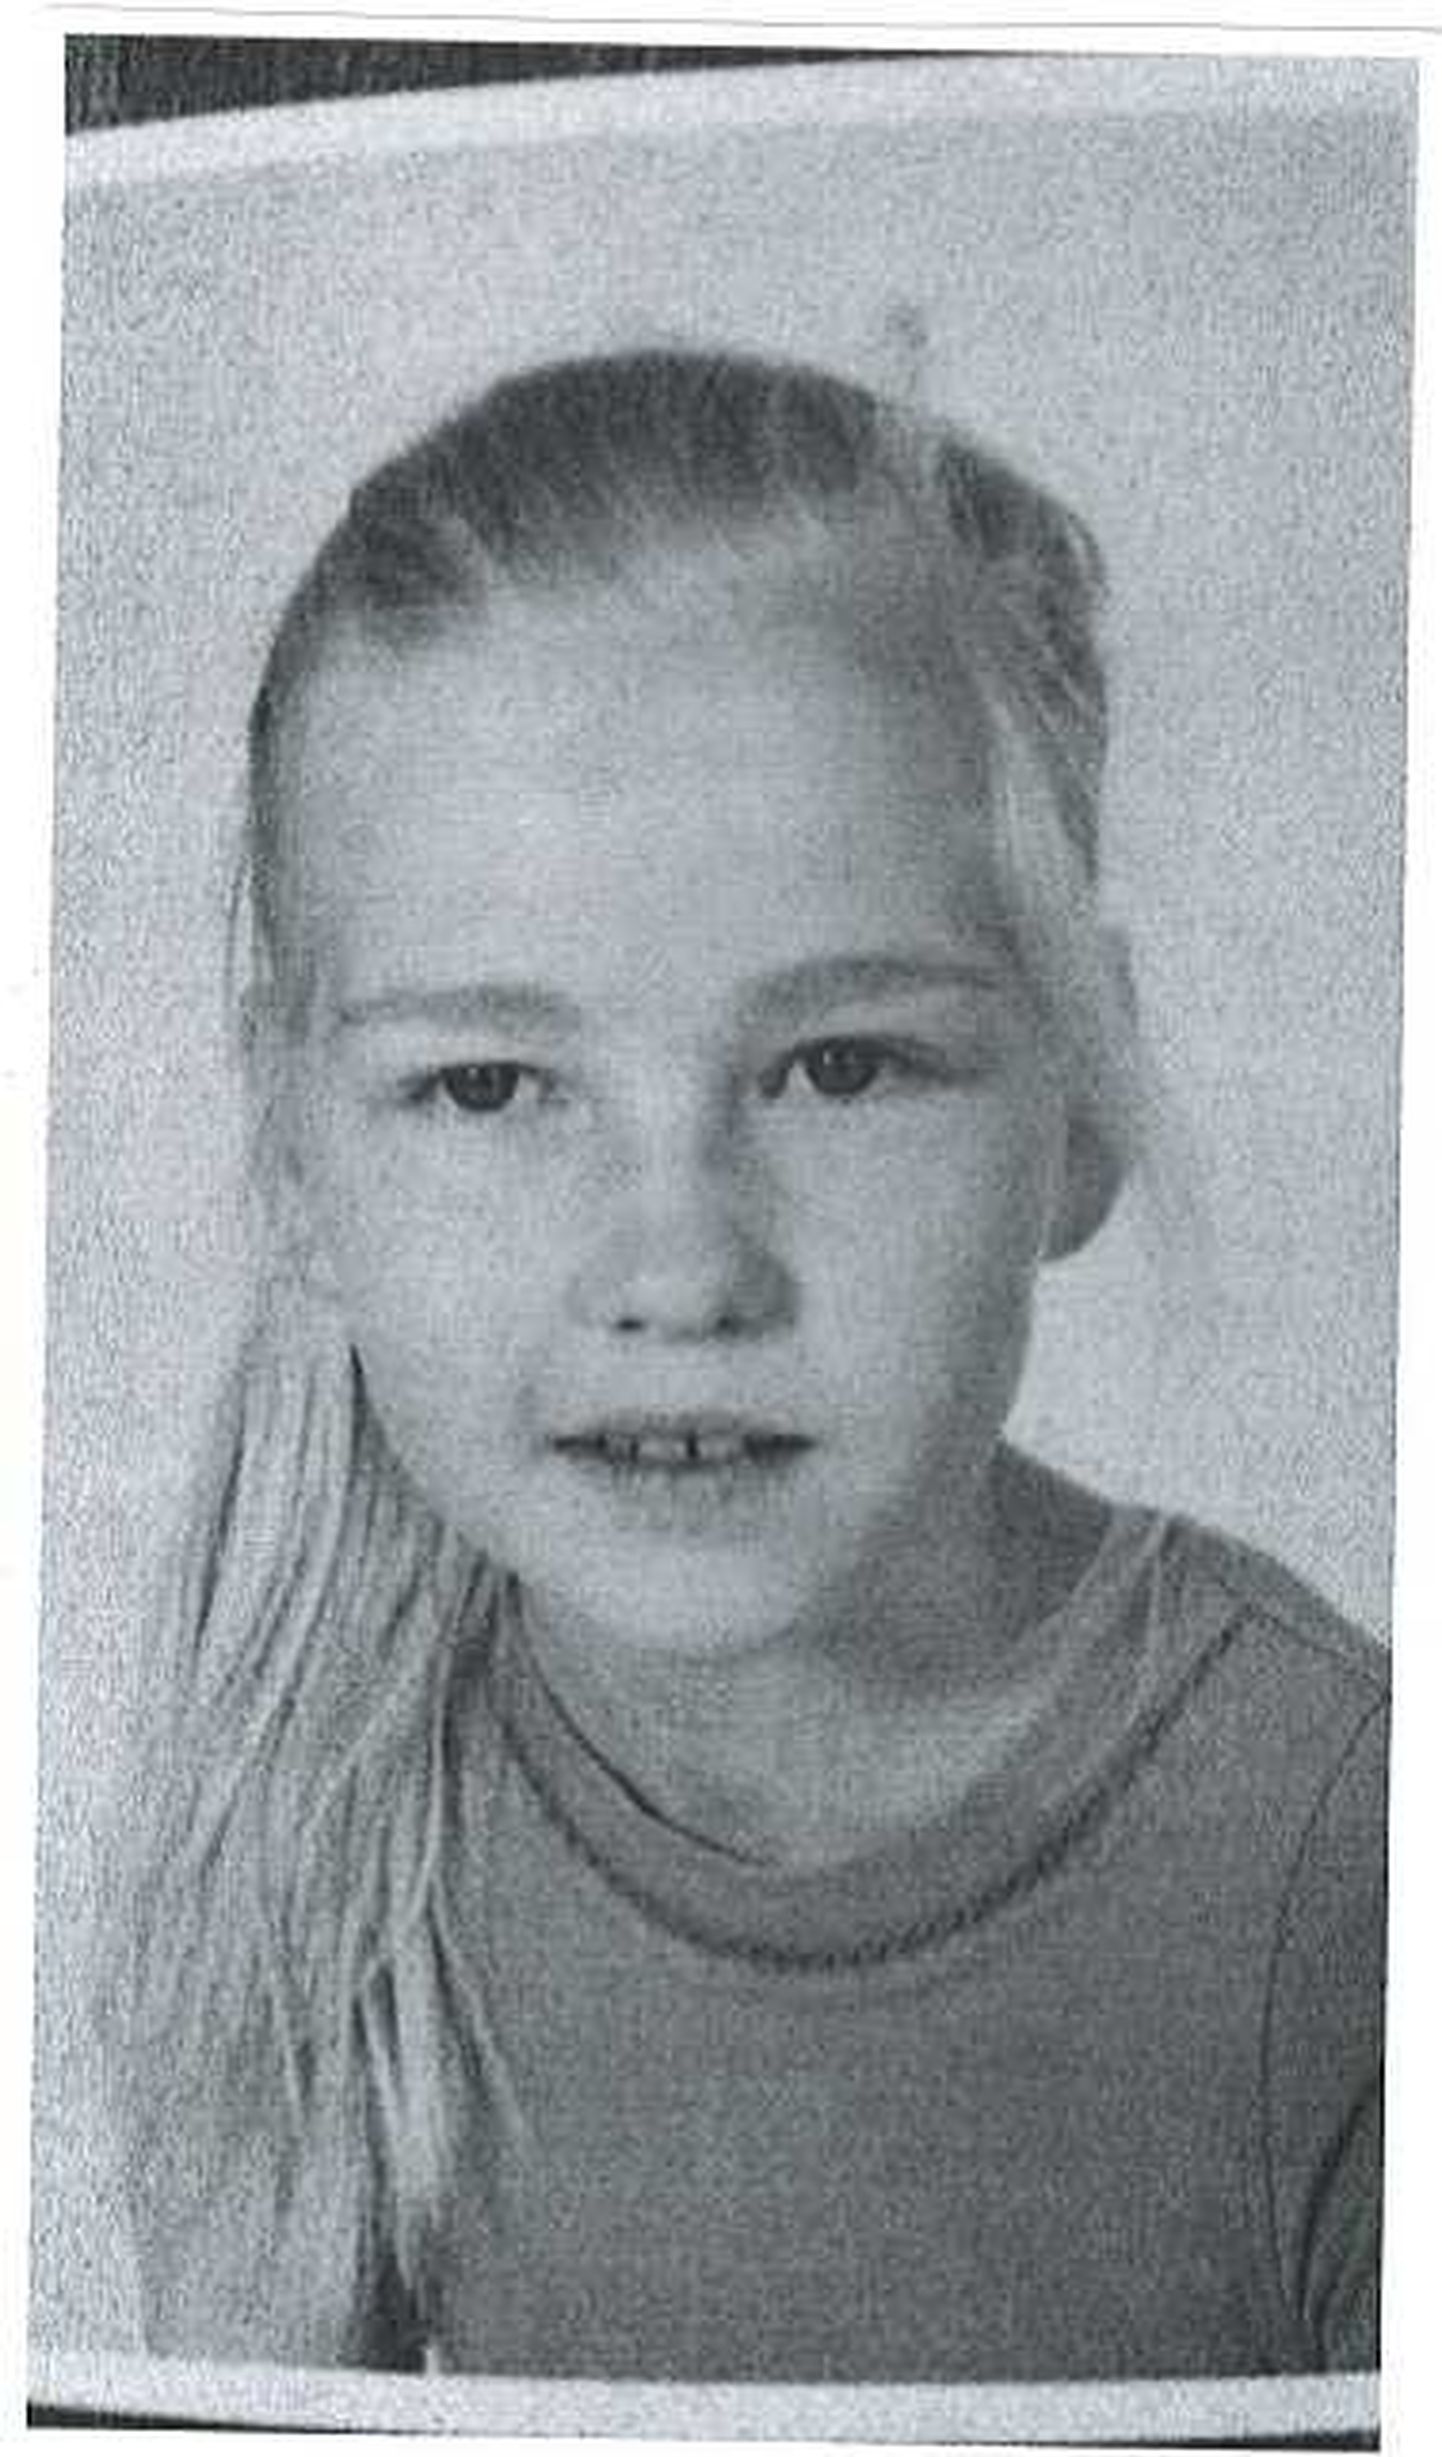 Полиция ищет в Хаапсалу пропавшую 12-летнюю Керту.